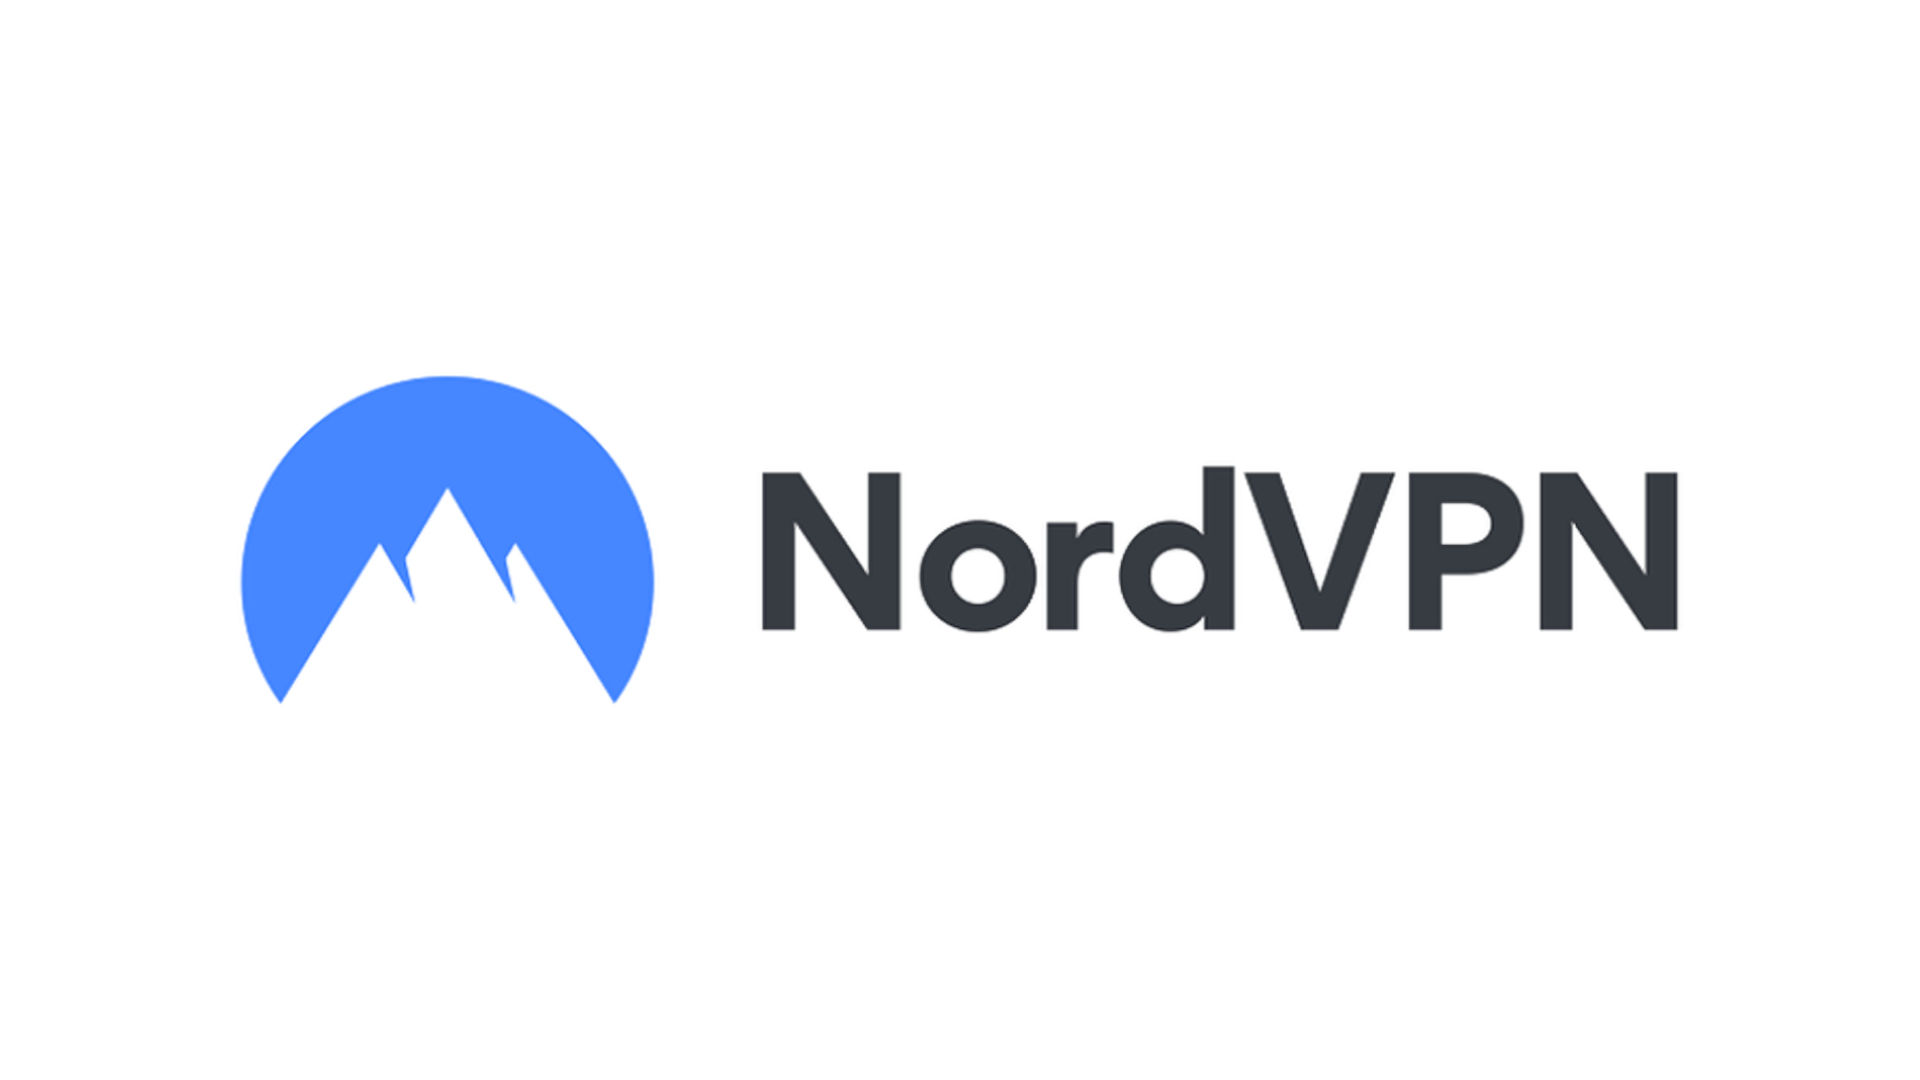 NordVPN logo on a white background.